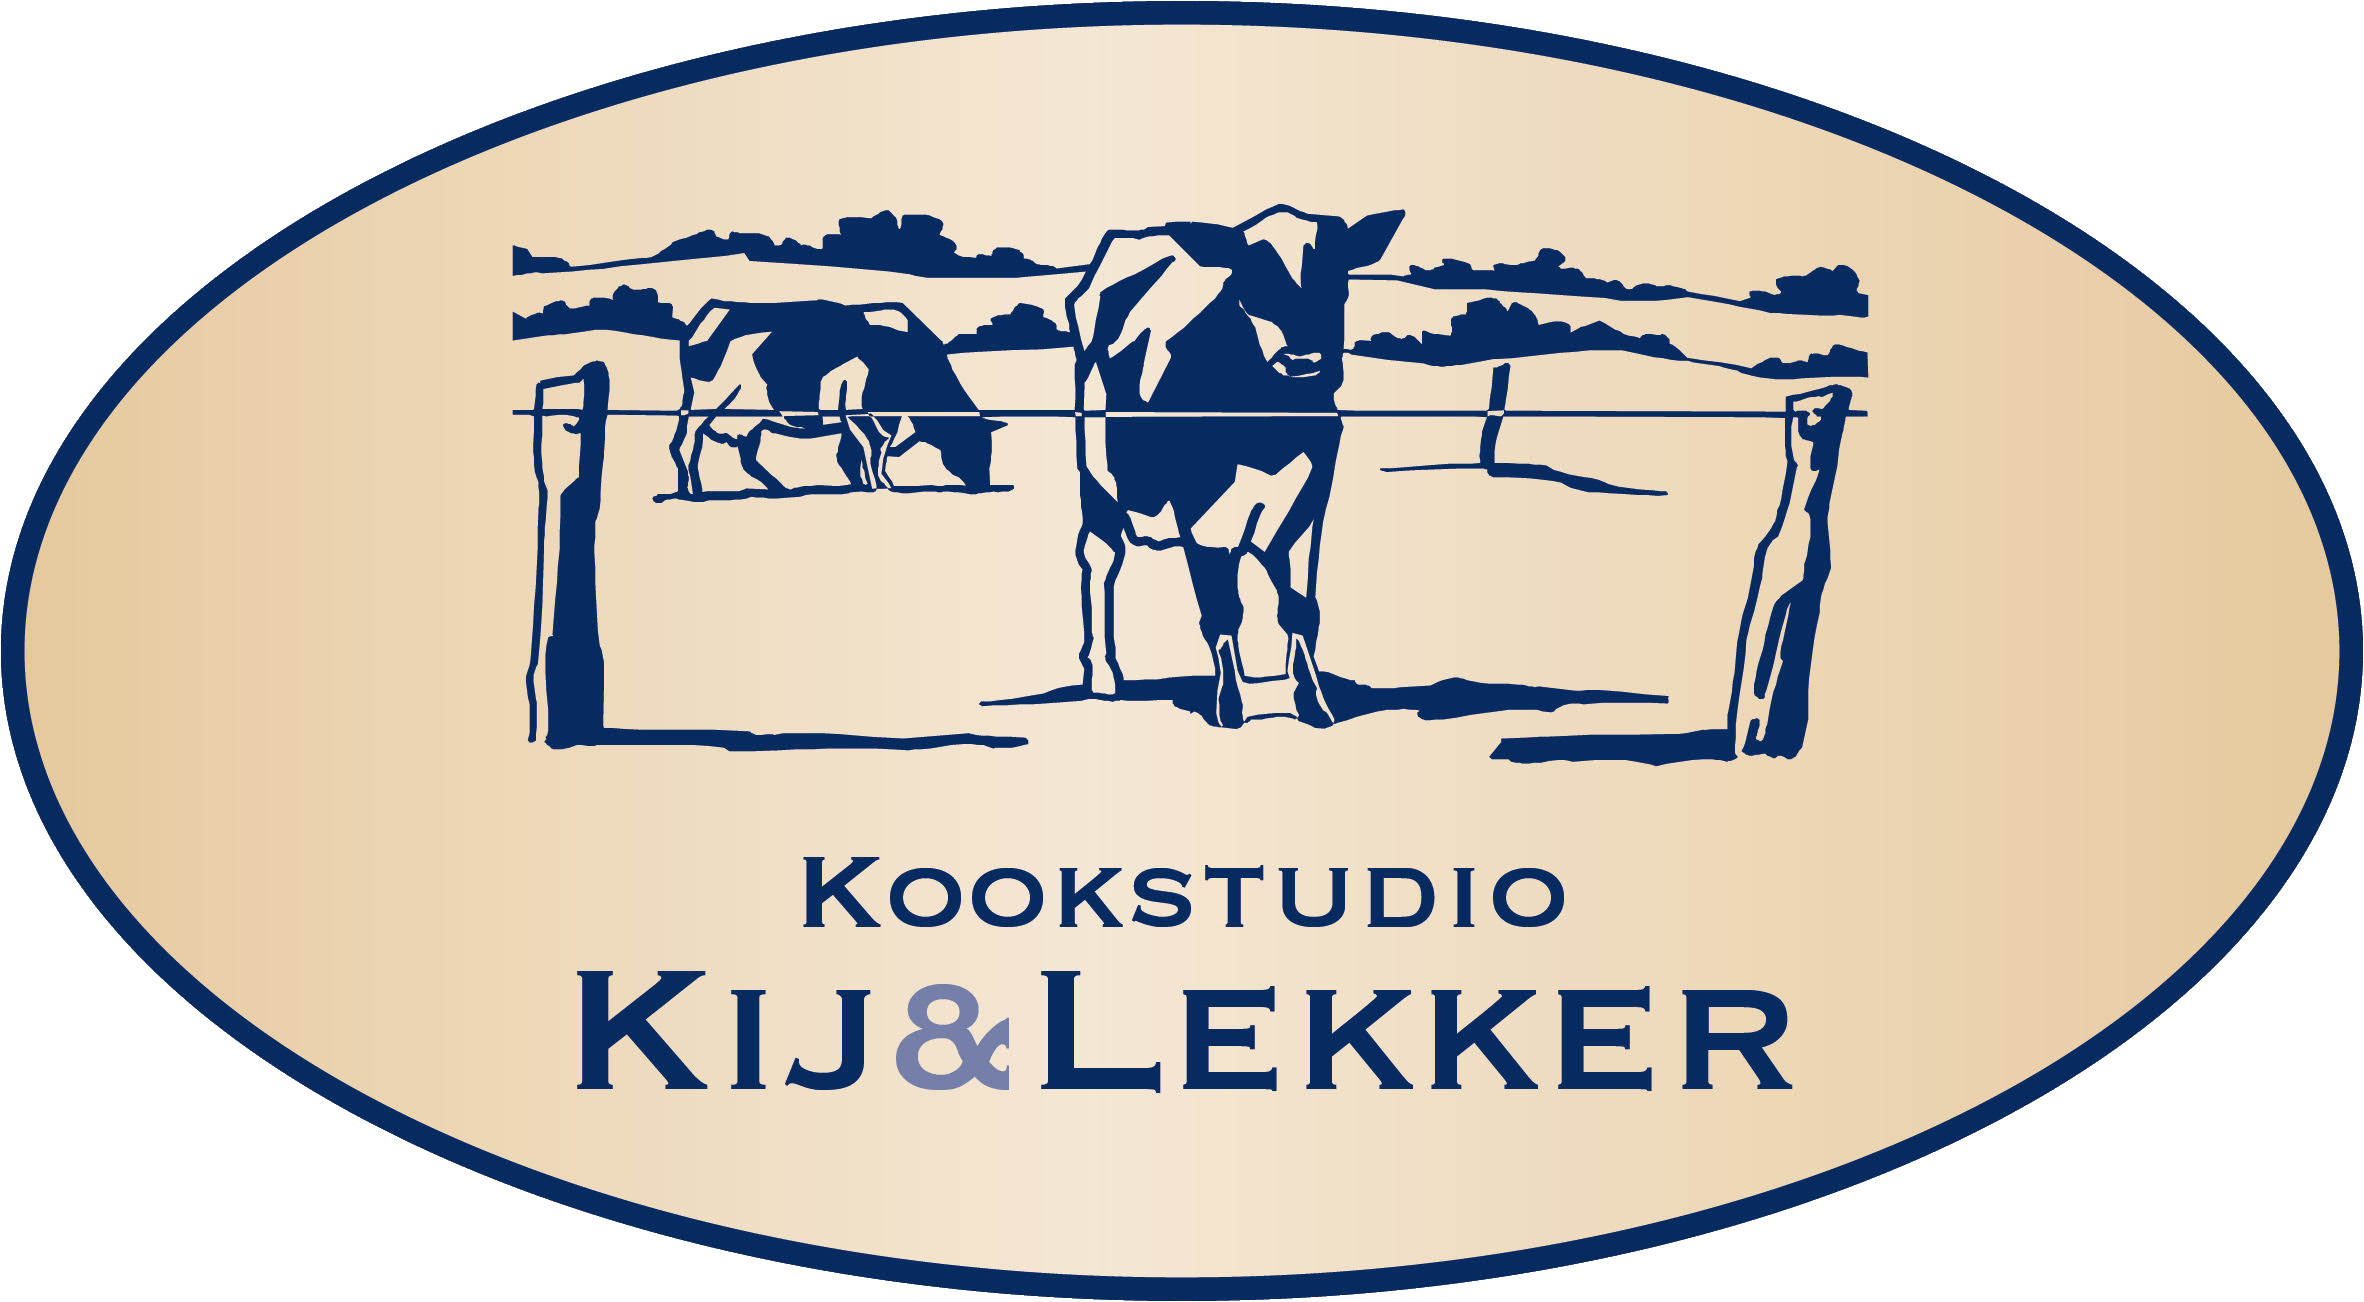 Kookstudio Kij & Lekker logo